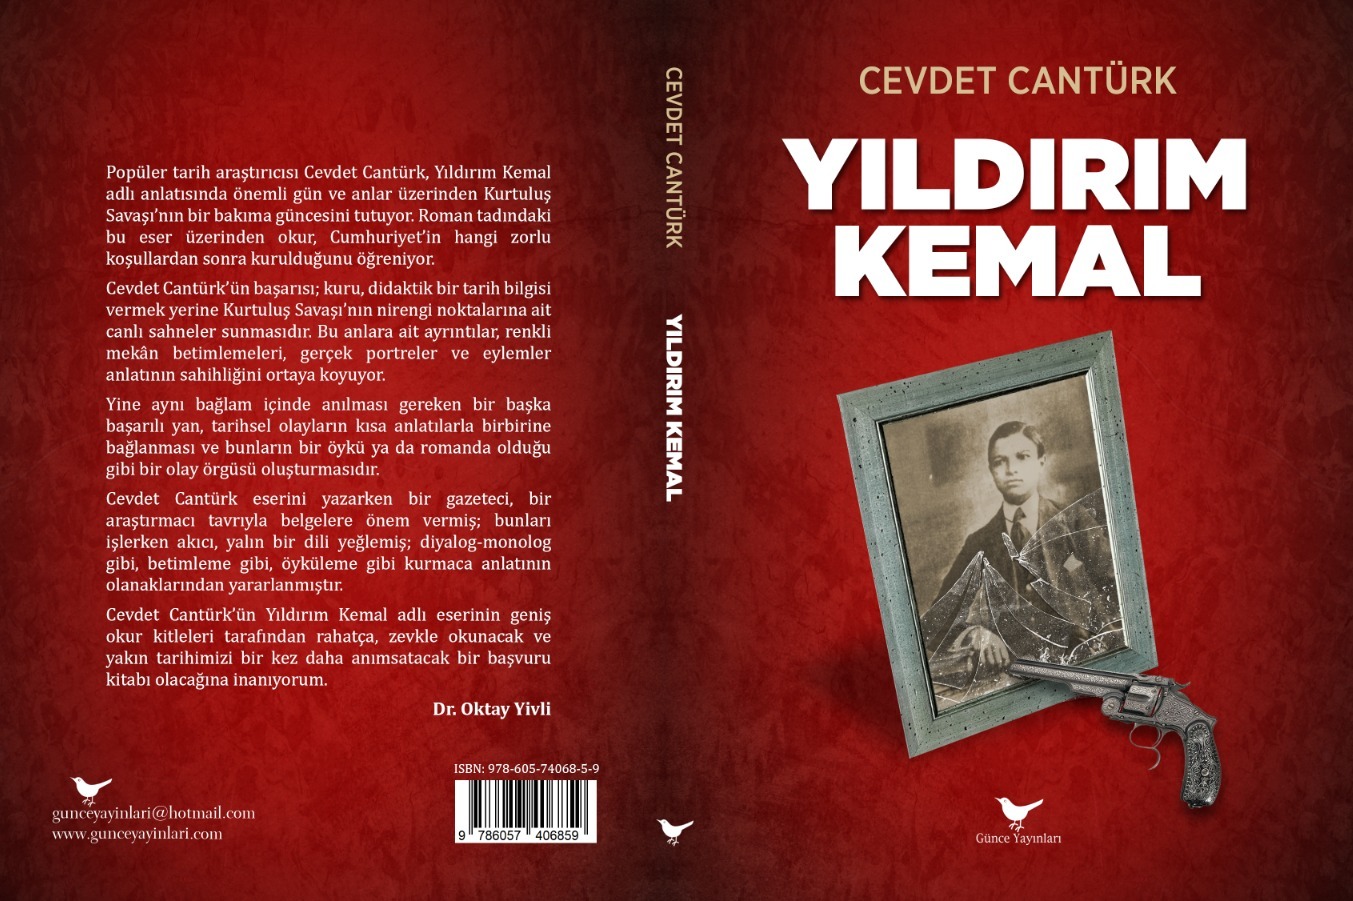 İstiklal Harbi araştırmacısı Cevdet Cantürk, Kuvayi Milliye Ruhu’nun simge ismi İzmirli Yıldırım Kemal’in destansı mücadelesini kaleme aldı.